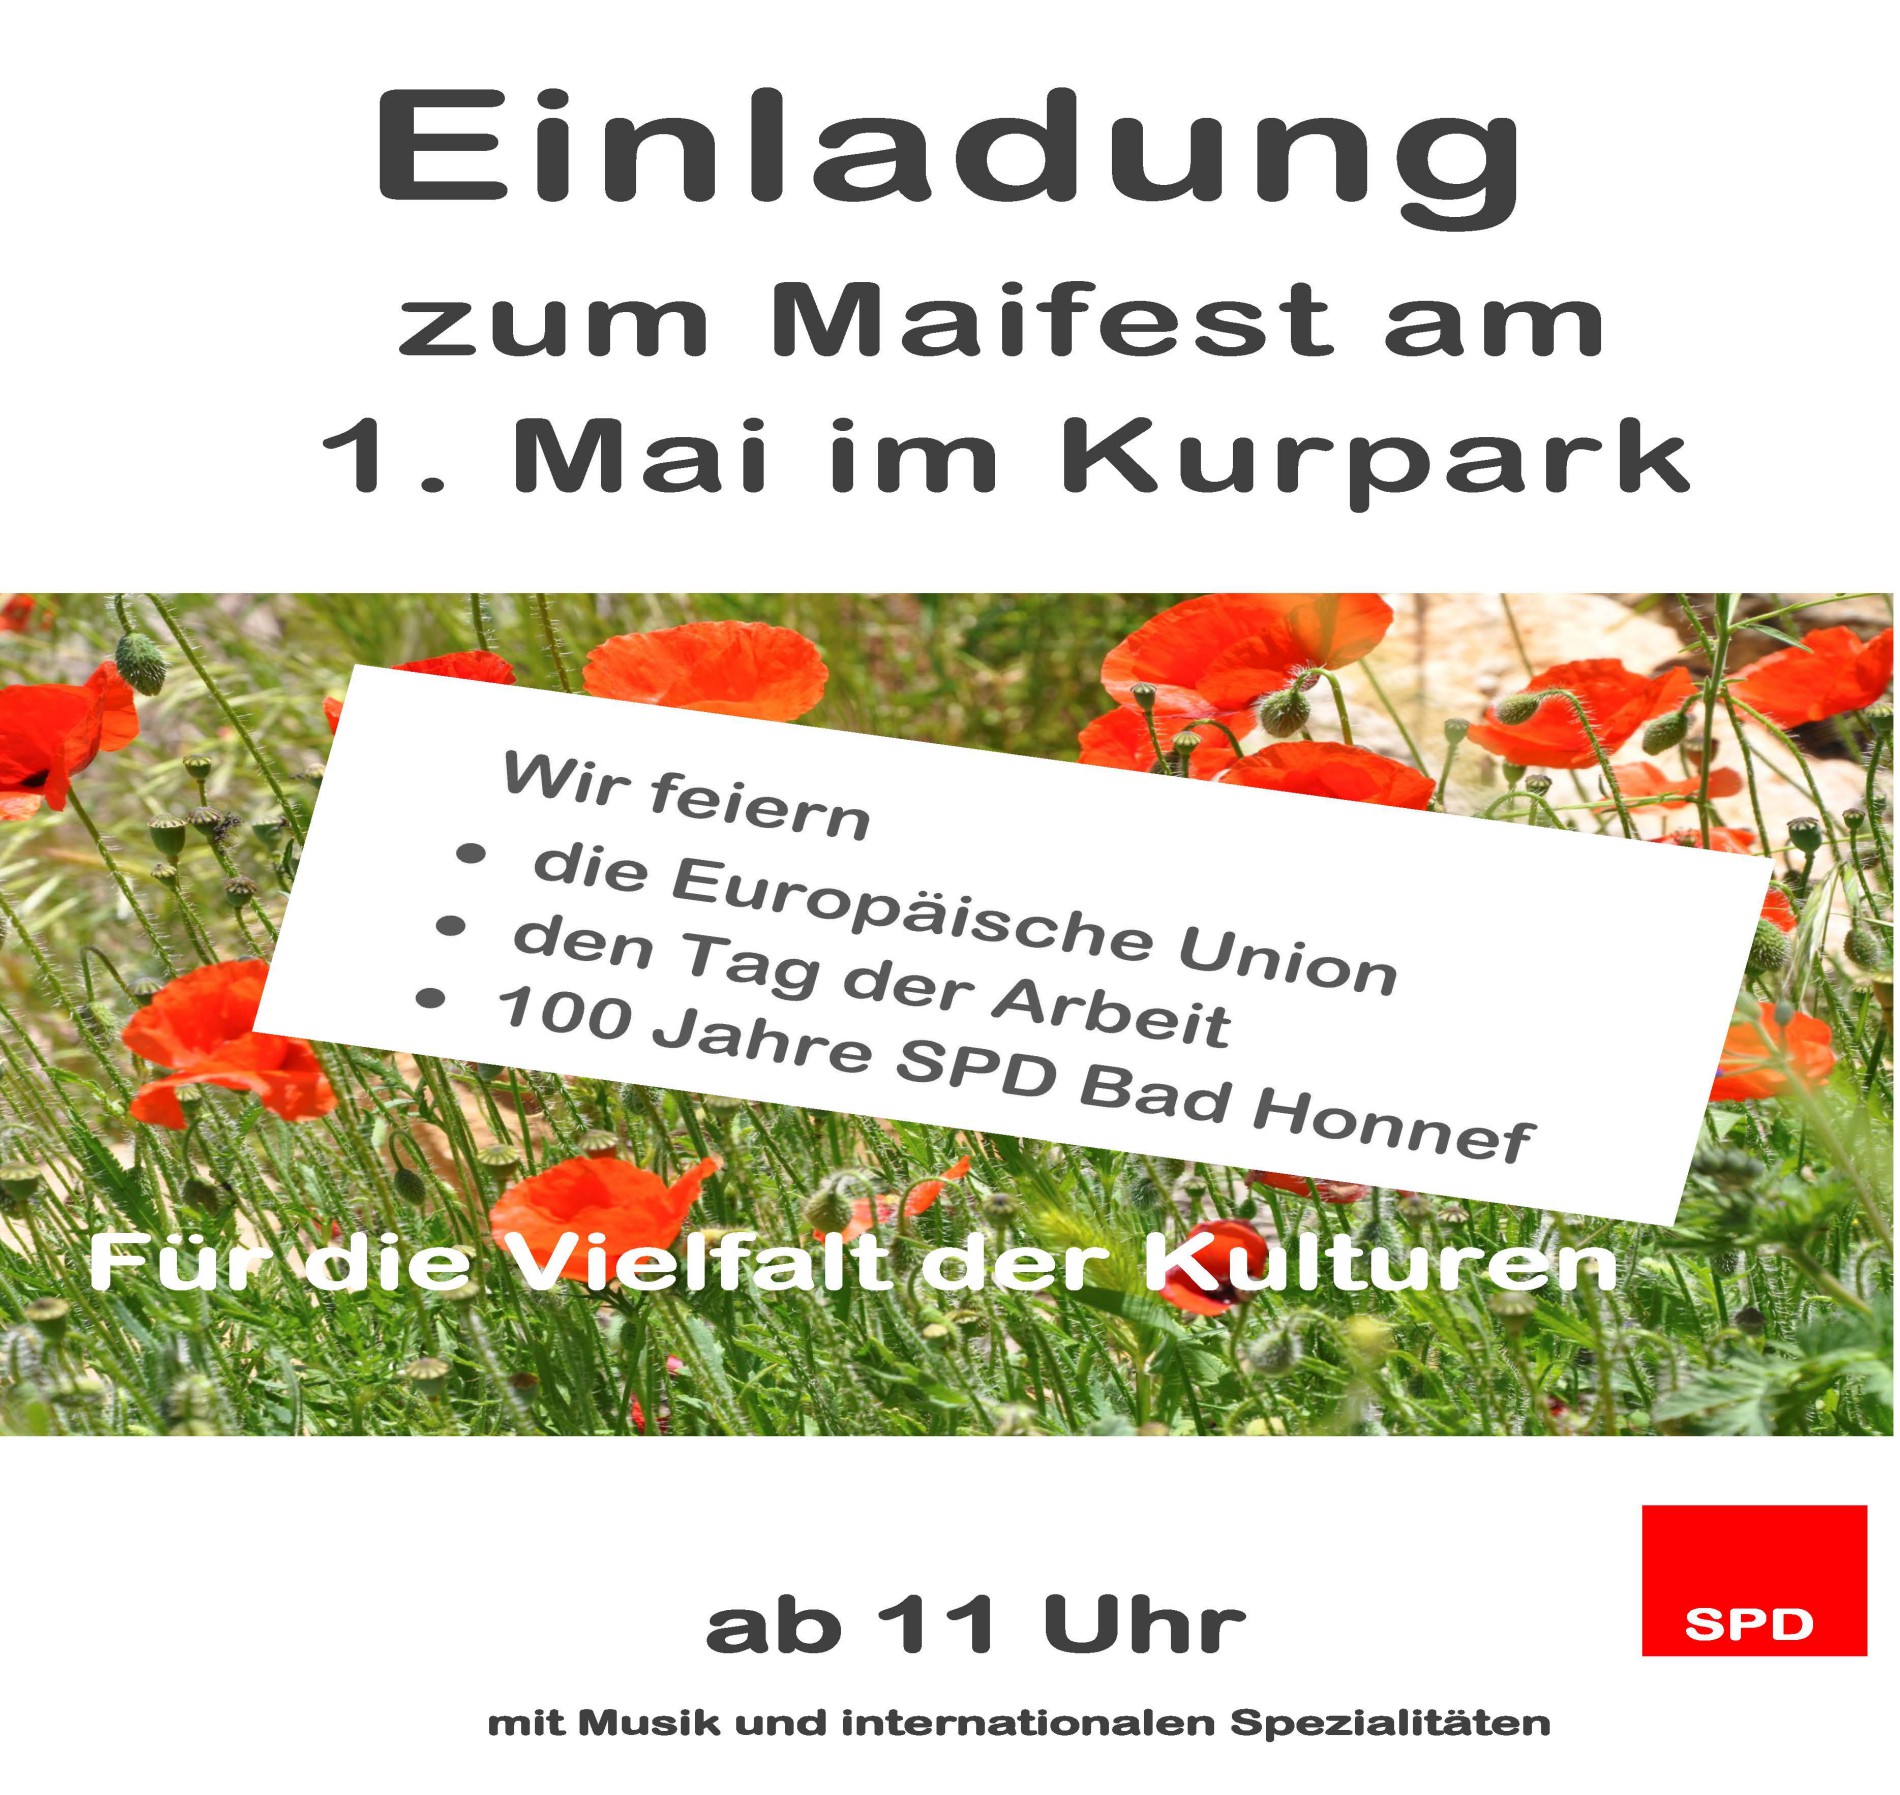  Maifest der SPD Bad Honnef